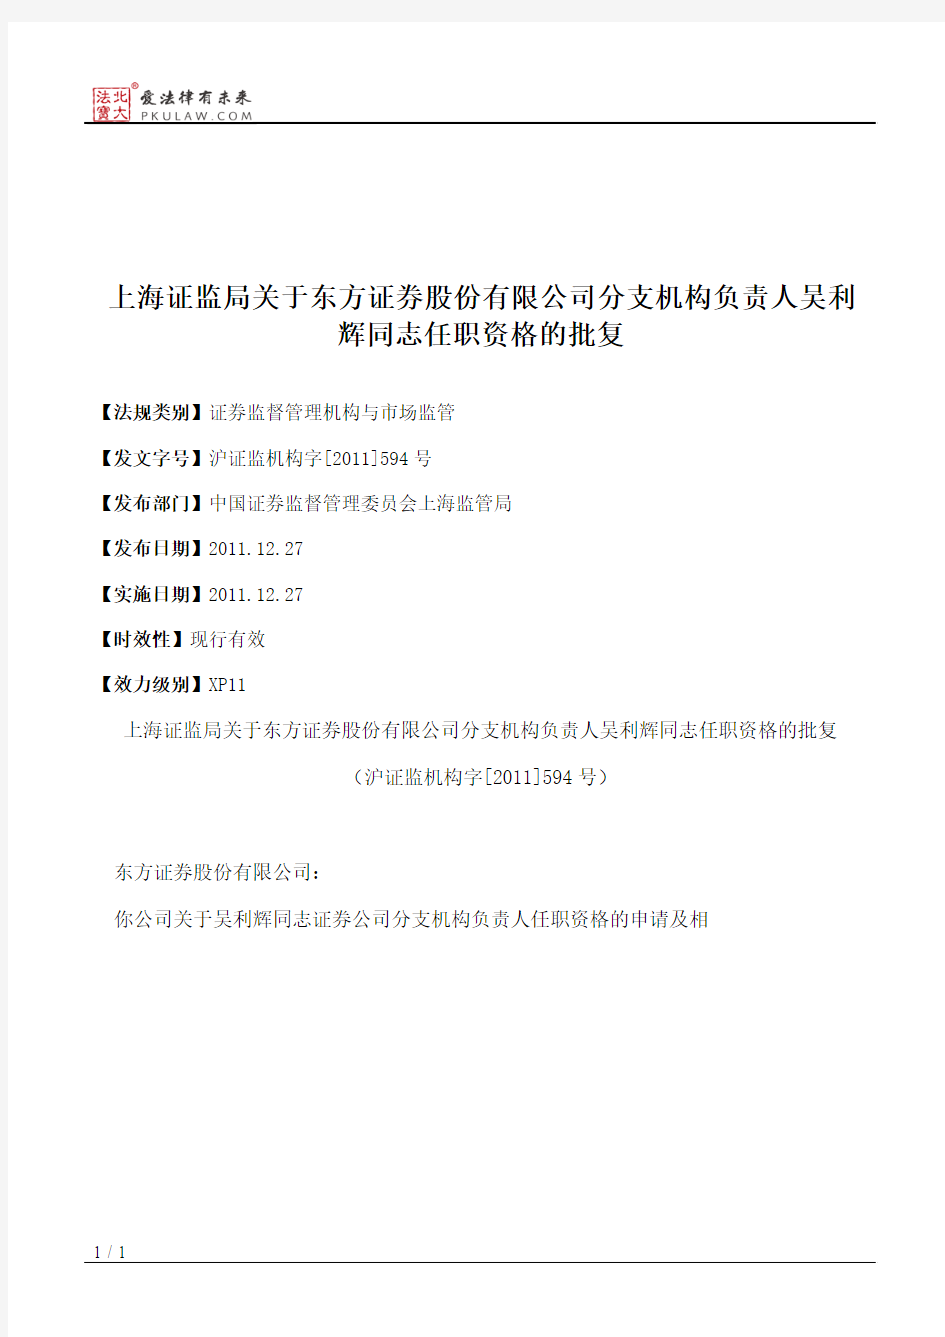 上海证监局关于东方证券股份有限公司分支机构负责人吴利辉同志任